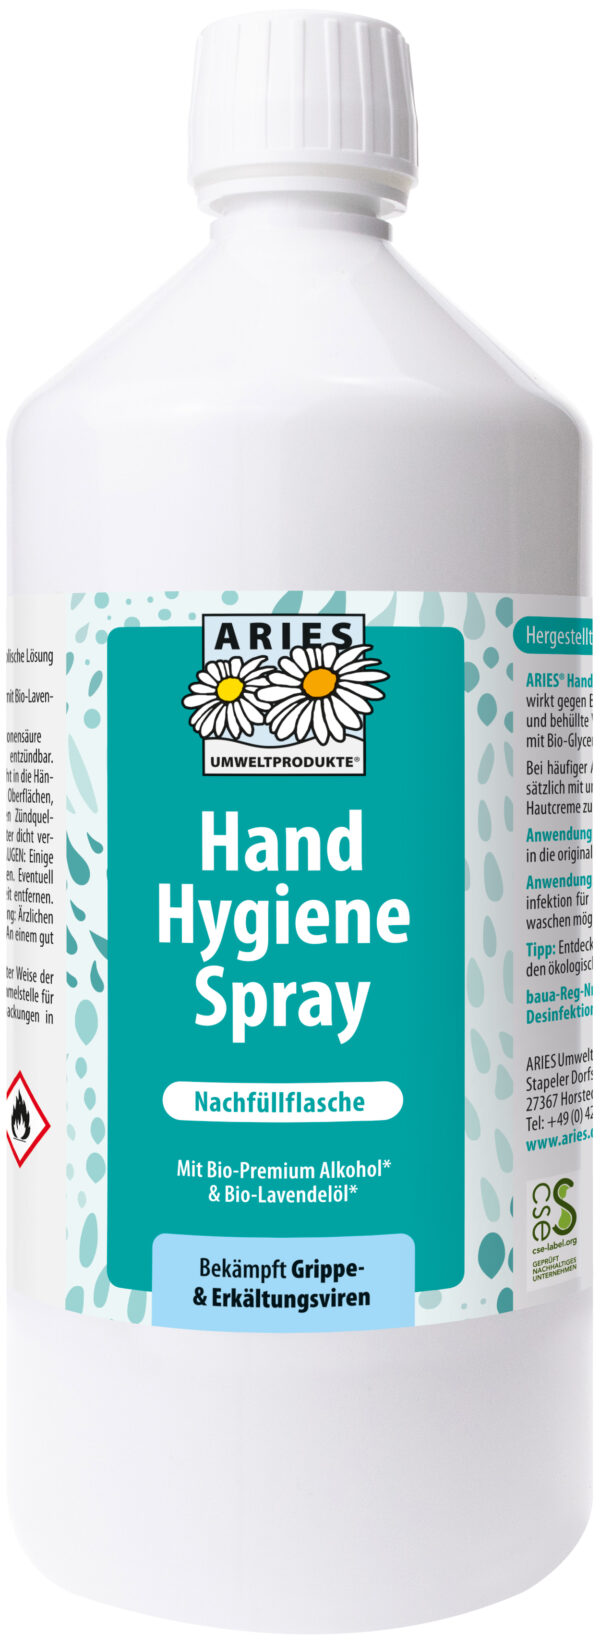 Aries Hand Hygiene Spray Nachfüllflasche 1000ml ***